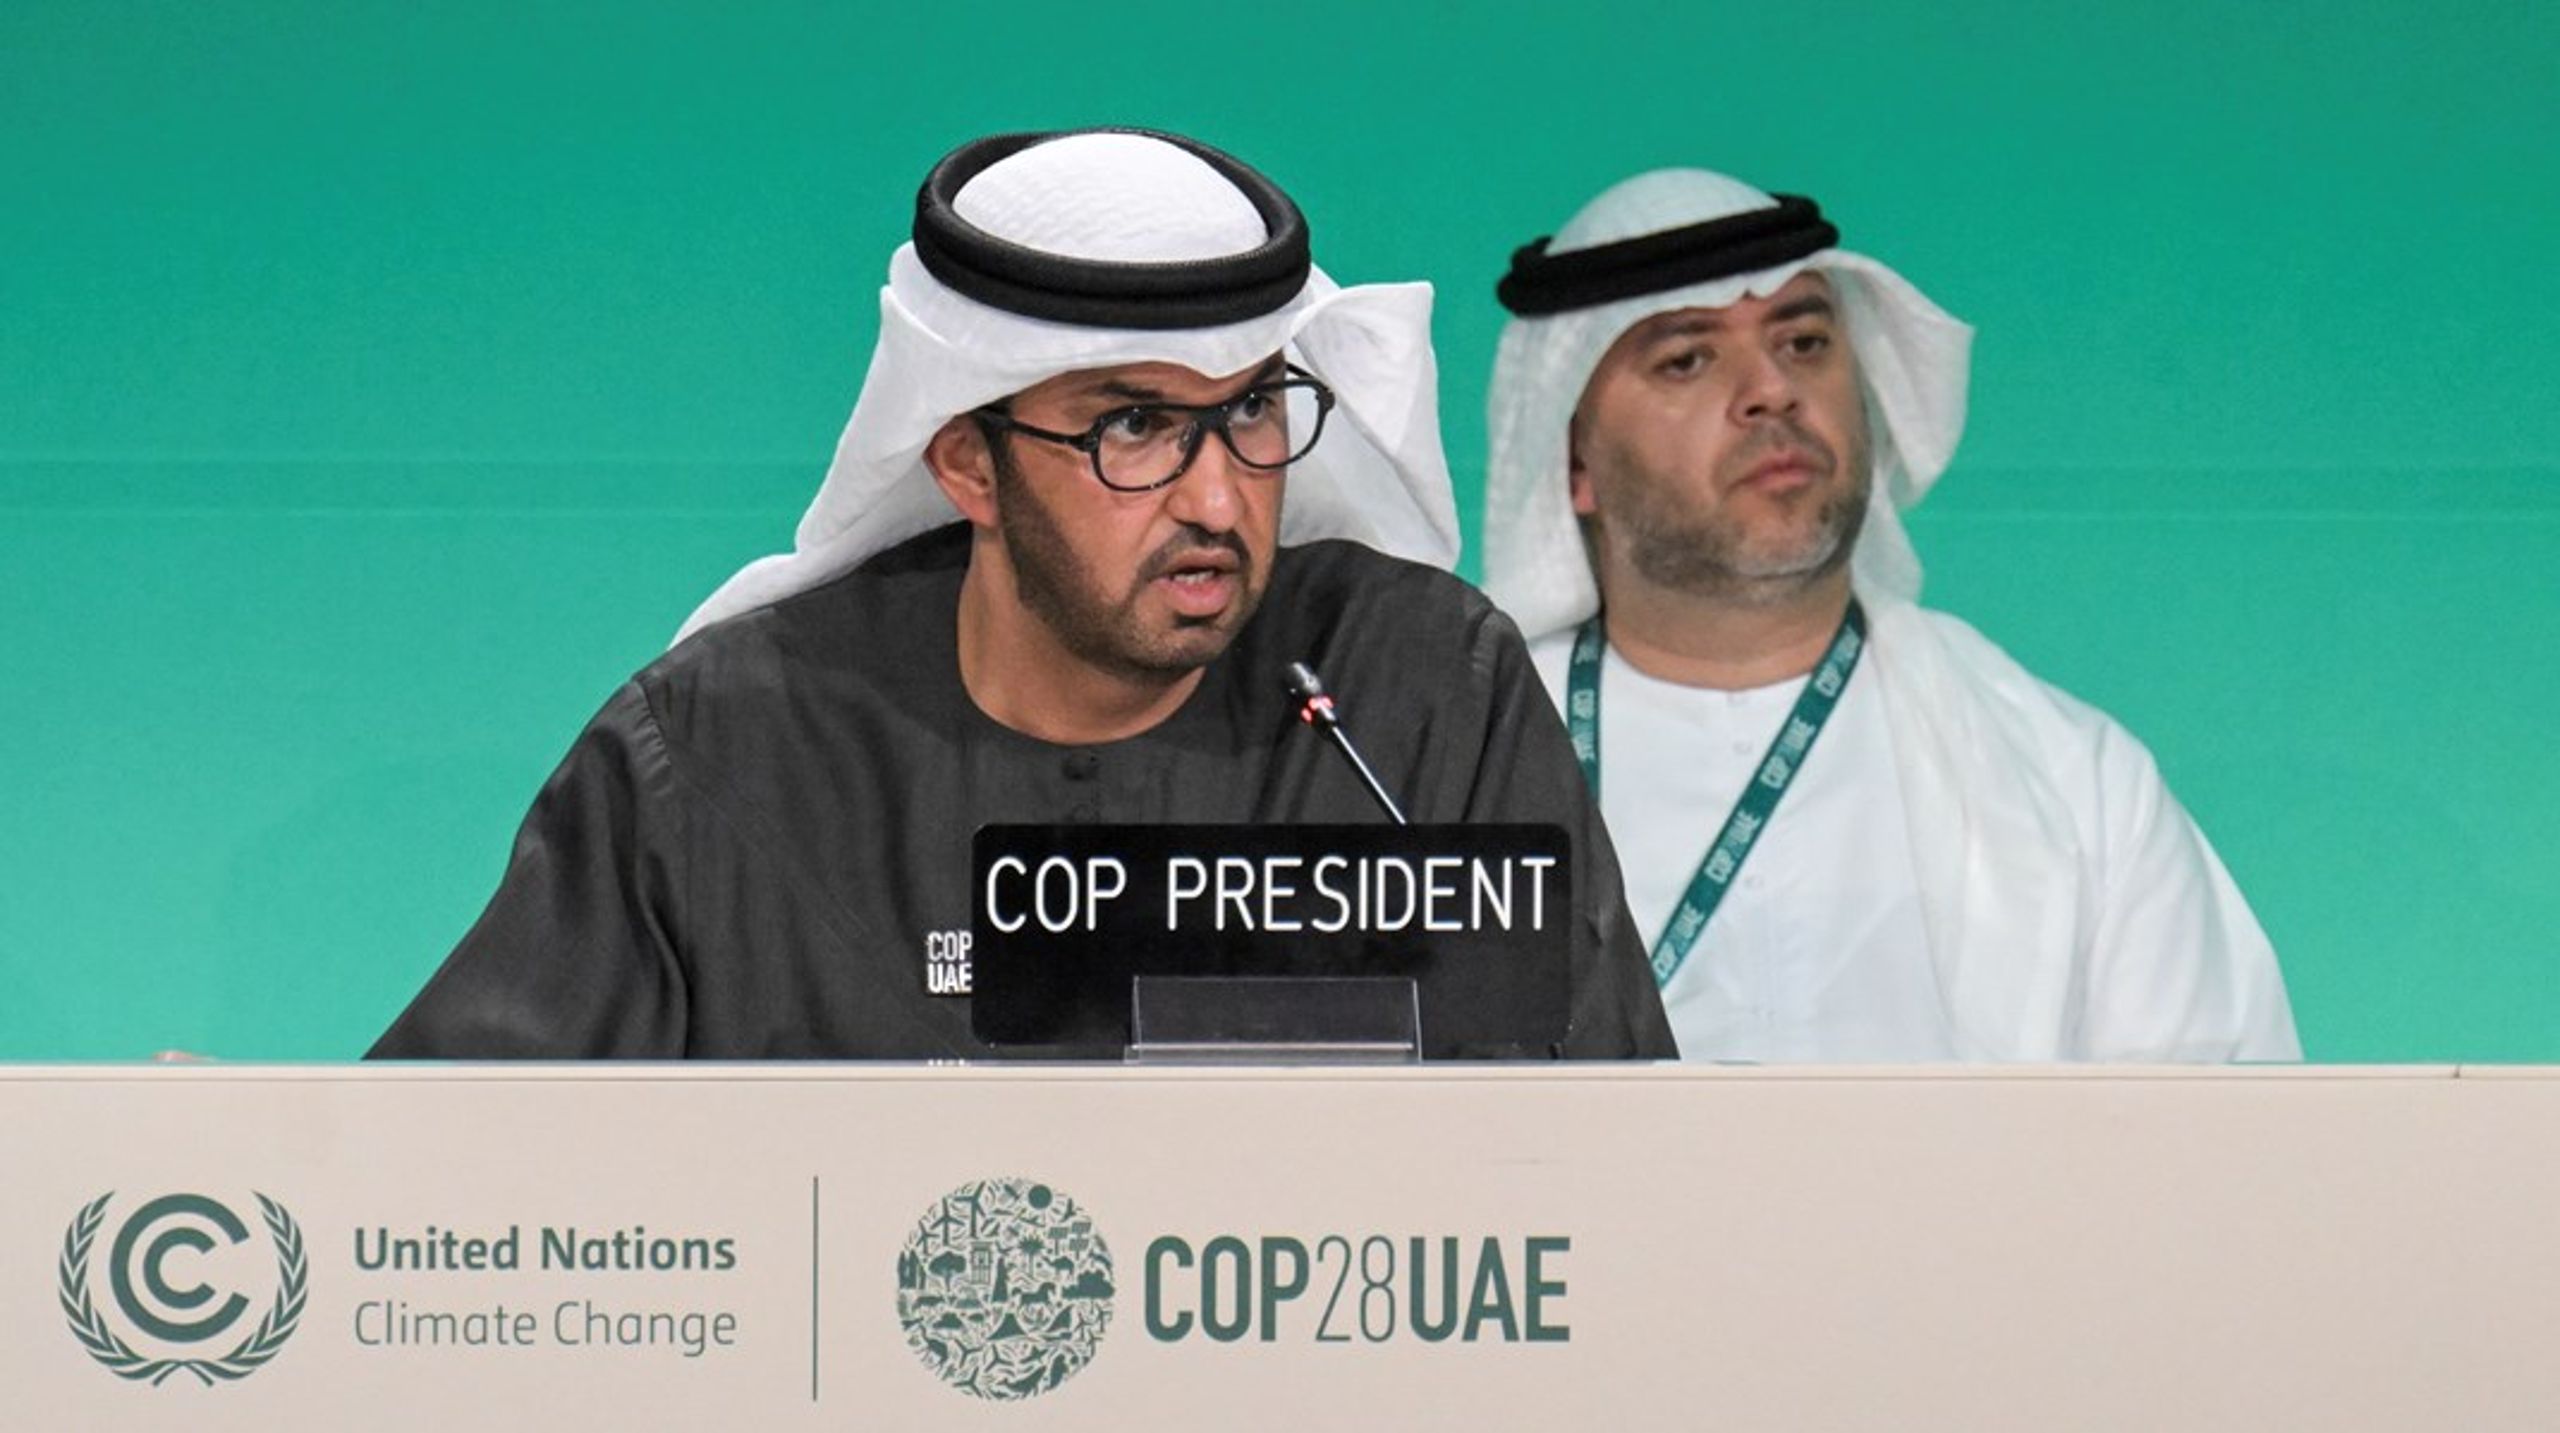 For bordenden af COP28 sad en oliechef og klimabenægter, Sultan Al-Jaber, som formåede at bevare sit job men ikke verdens tillid, skriver fire klimaaktivister.